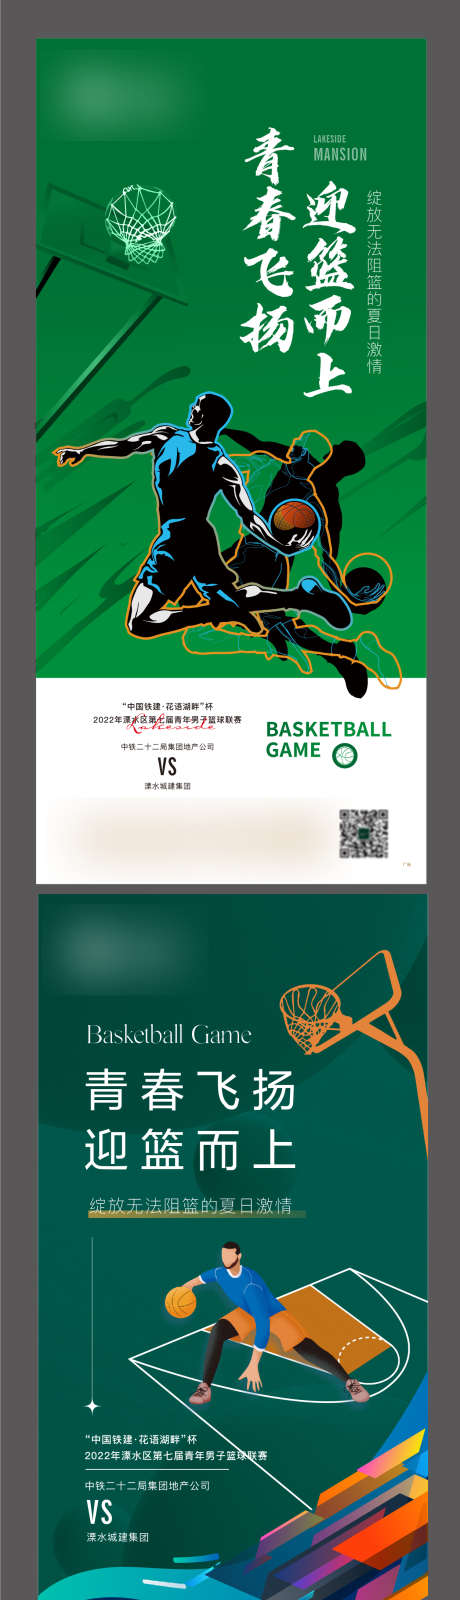 地产 篮球 比赛 青春 热烈_源文件下载_AI格式_1253X4815像素-热烈,青春,比赛,篮球,地产-作品编号:2023091319006012-志设-zs9.com